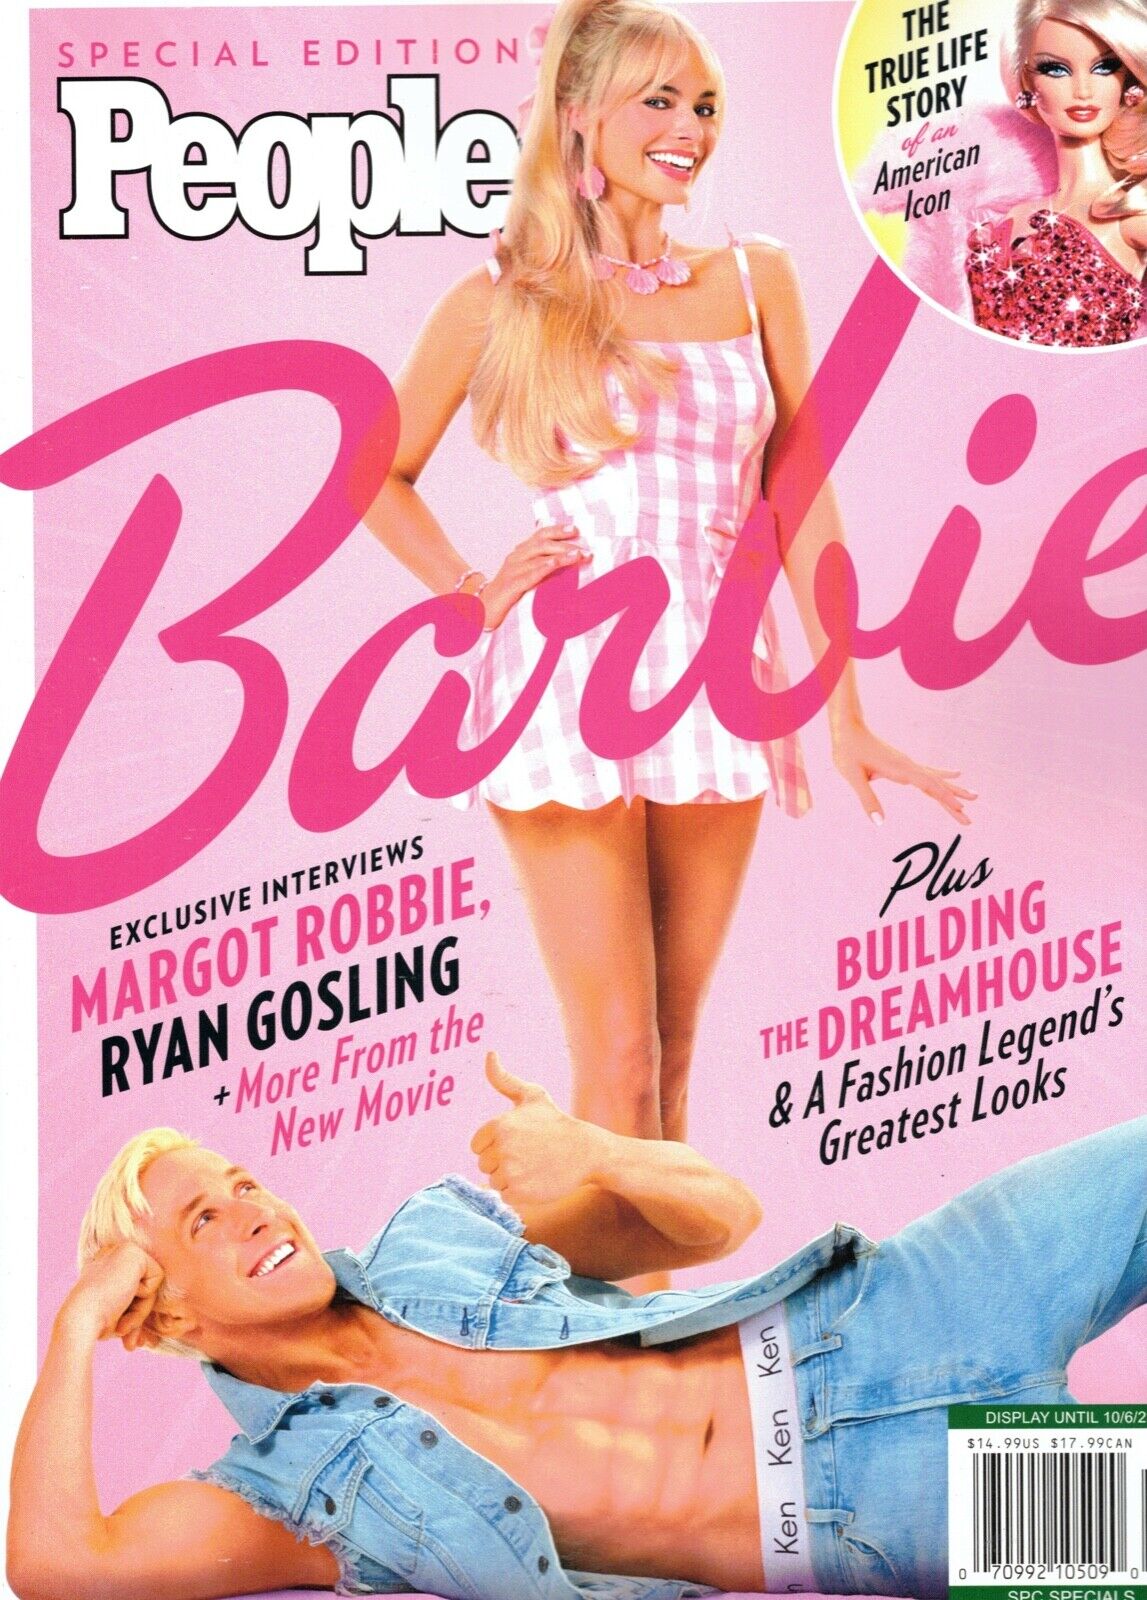 BARBIE (2023) Movie Affiche de cinéma Poster Margot Robbie Ryan Gosling #192